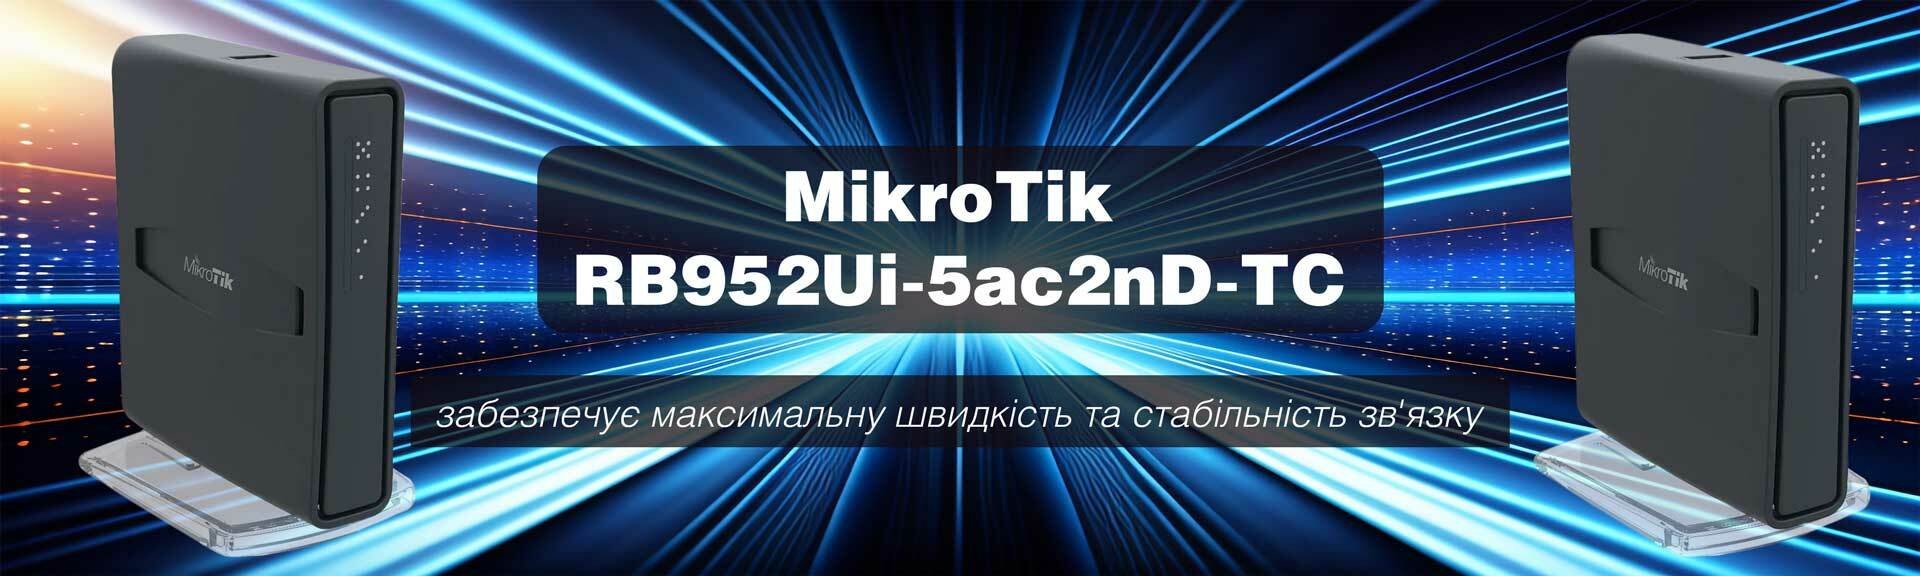 Двохдіапазонна точка доступу MikroTik з 5-портами